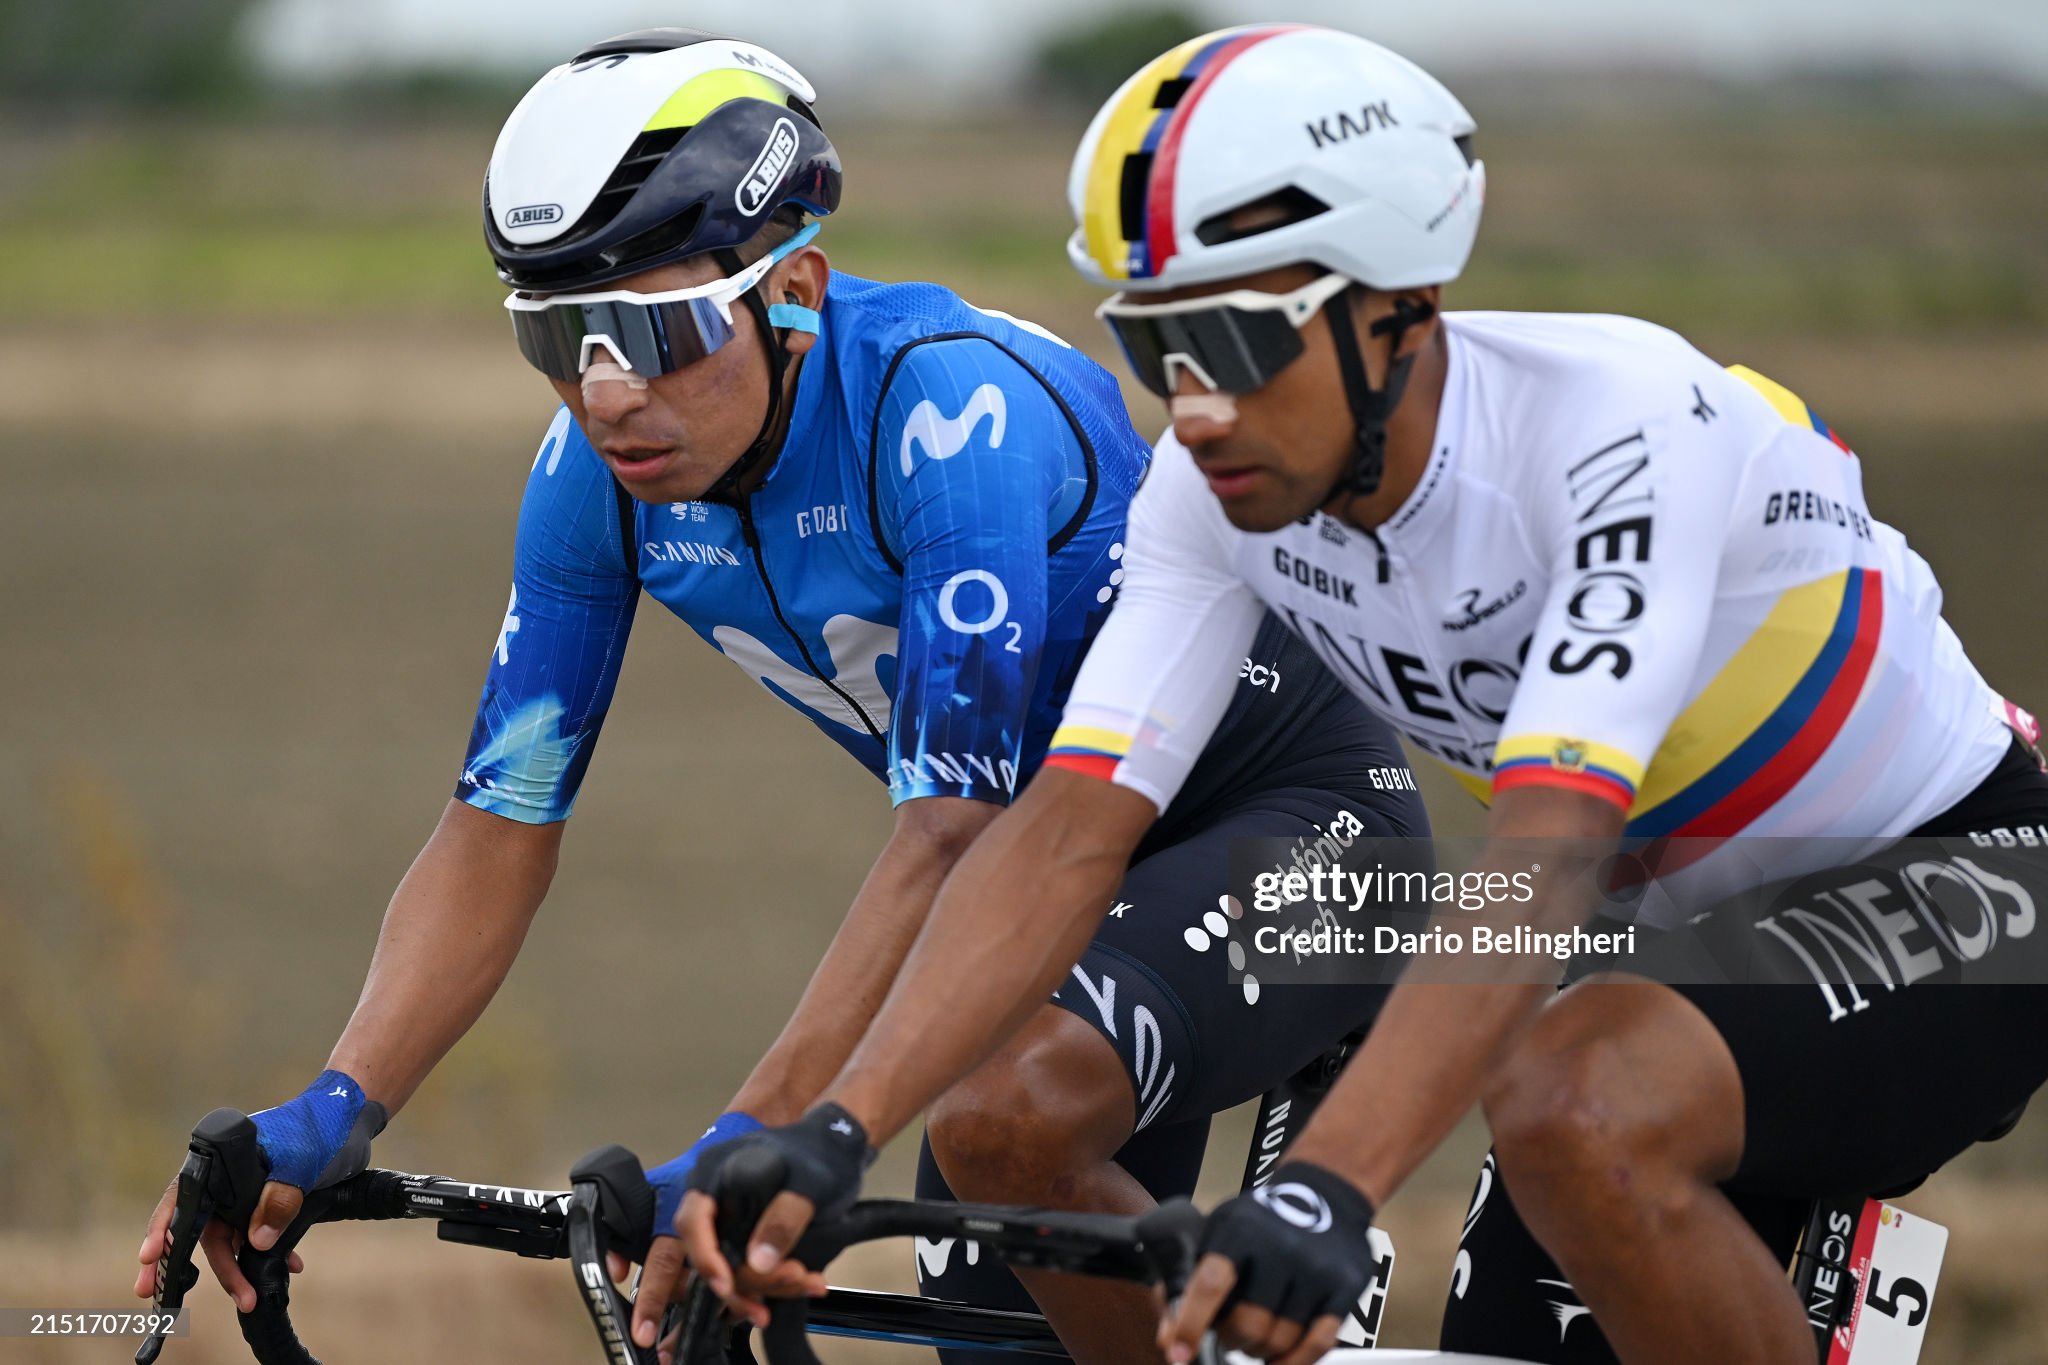 Nairo Quintana, sobre Pogacar: “Luce invencible, pero lo vimos perder el Tour dos veces siendo el más fuerte”